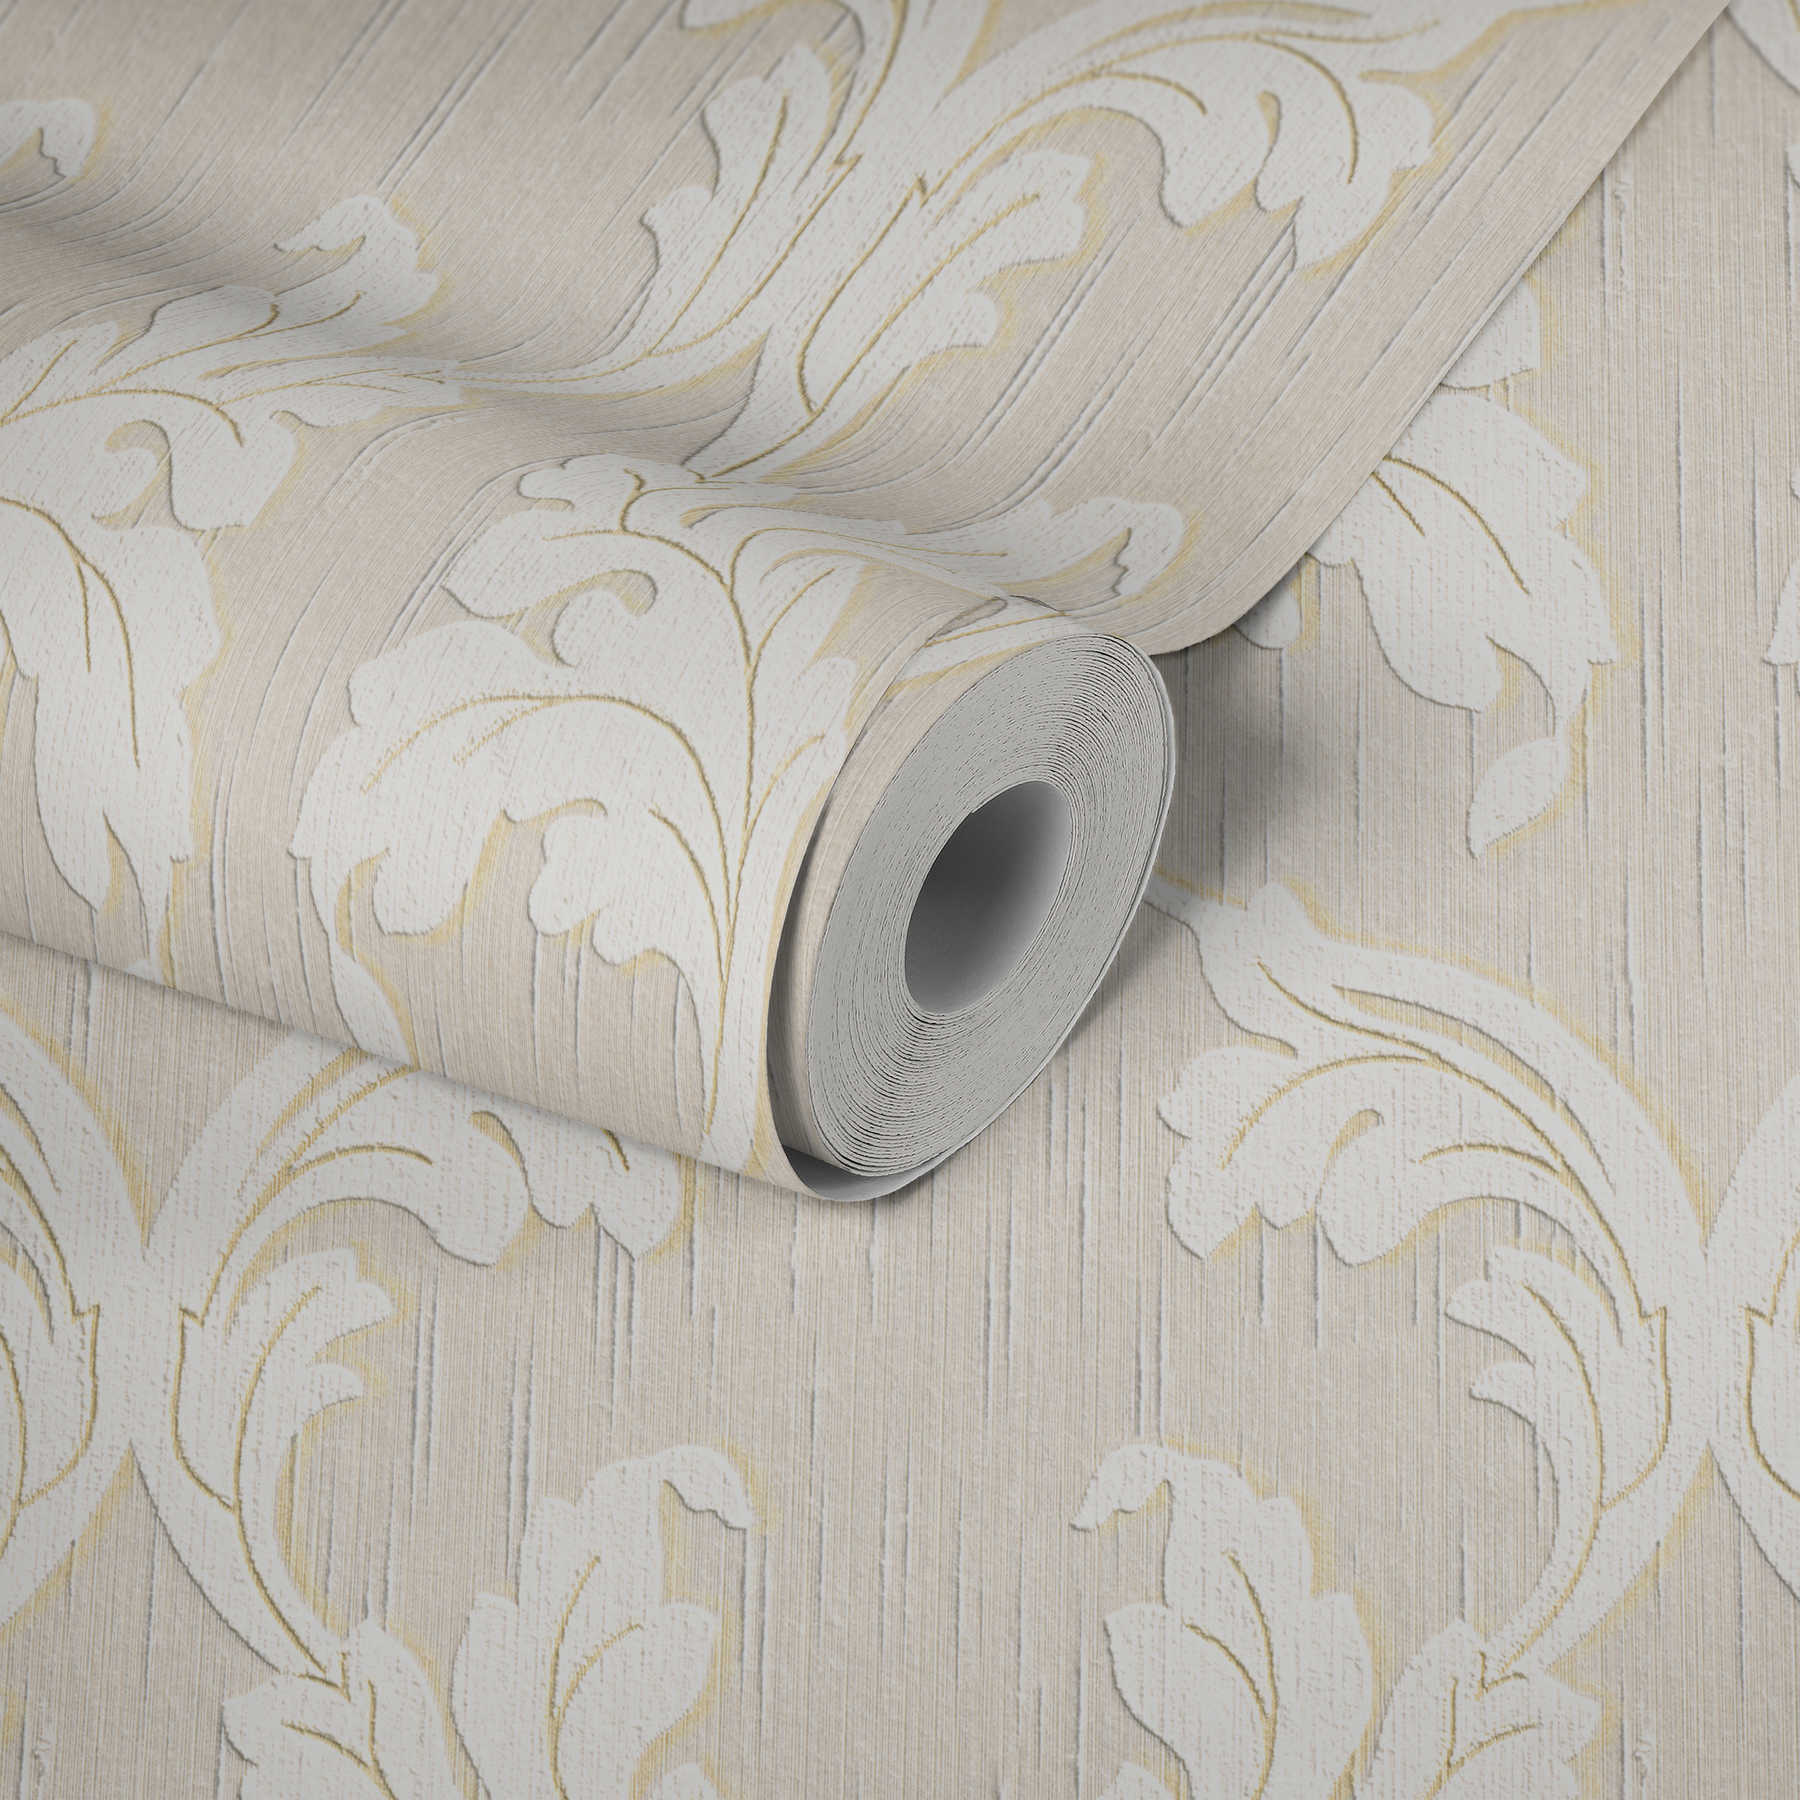             papier peint en papier textile premium avec ornement rinceaux - beige, crème, or
        